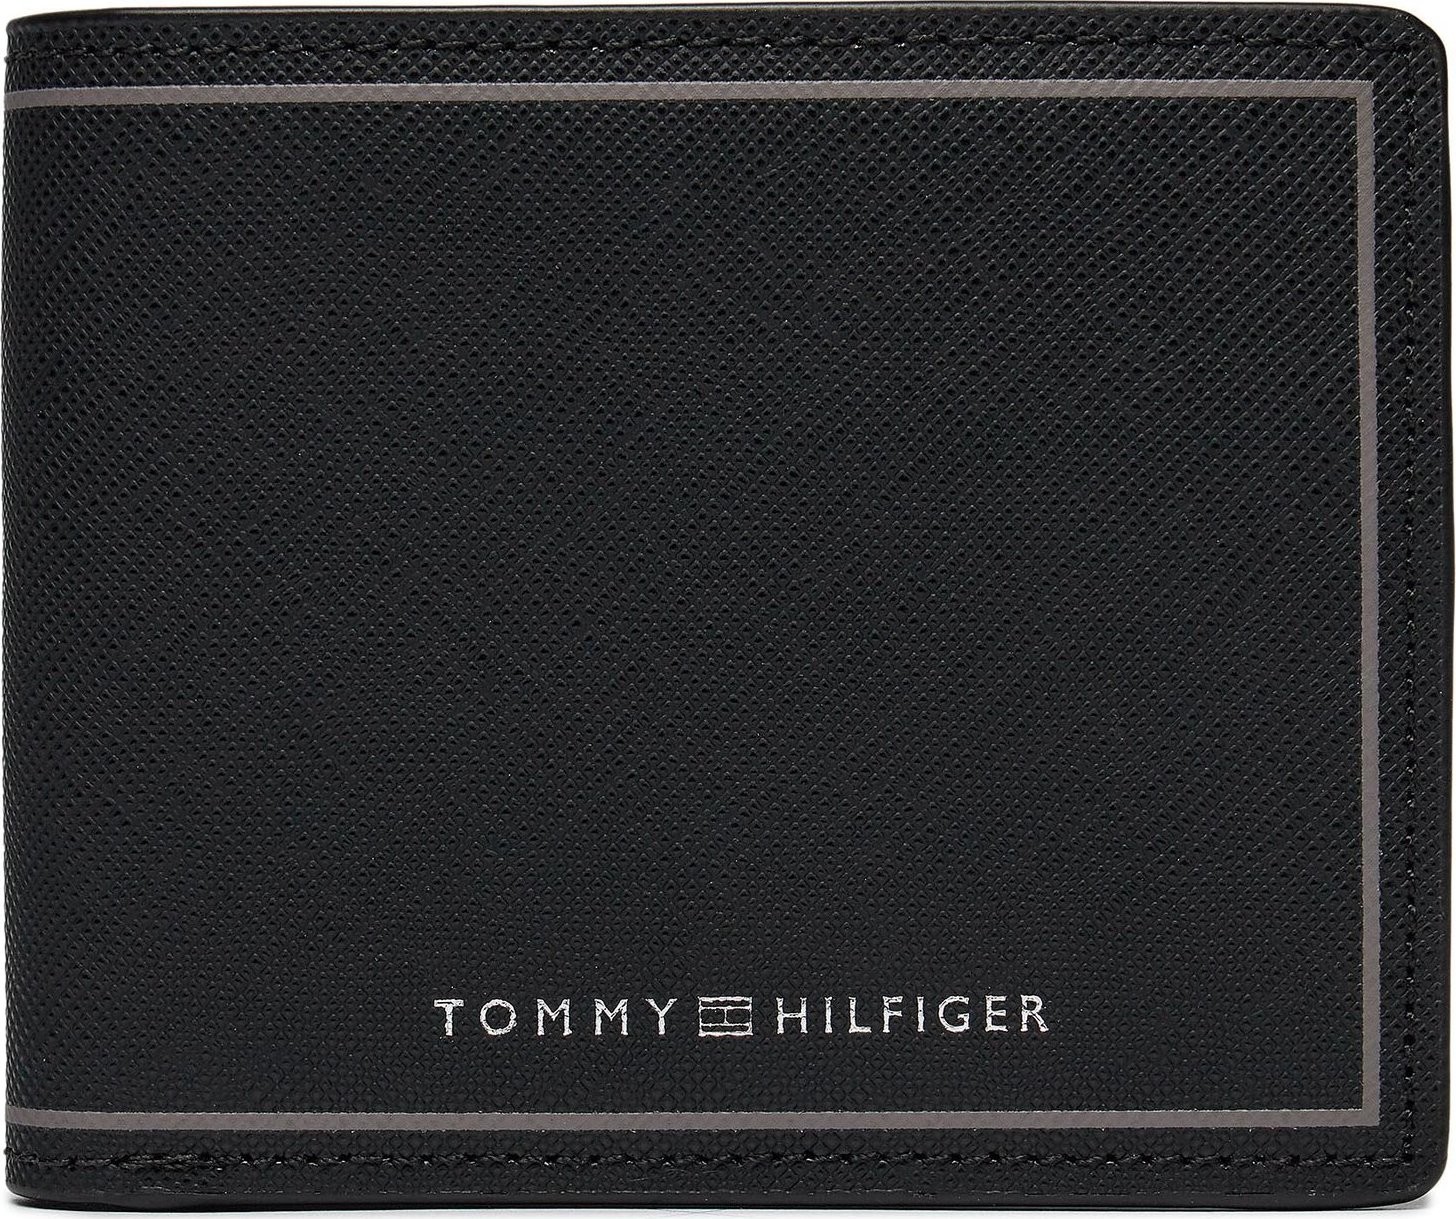 Velká pánská peněženka Tommy Hilfiger Th Central Cc And Coin Black BDS